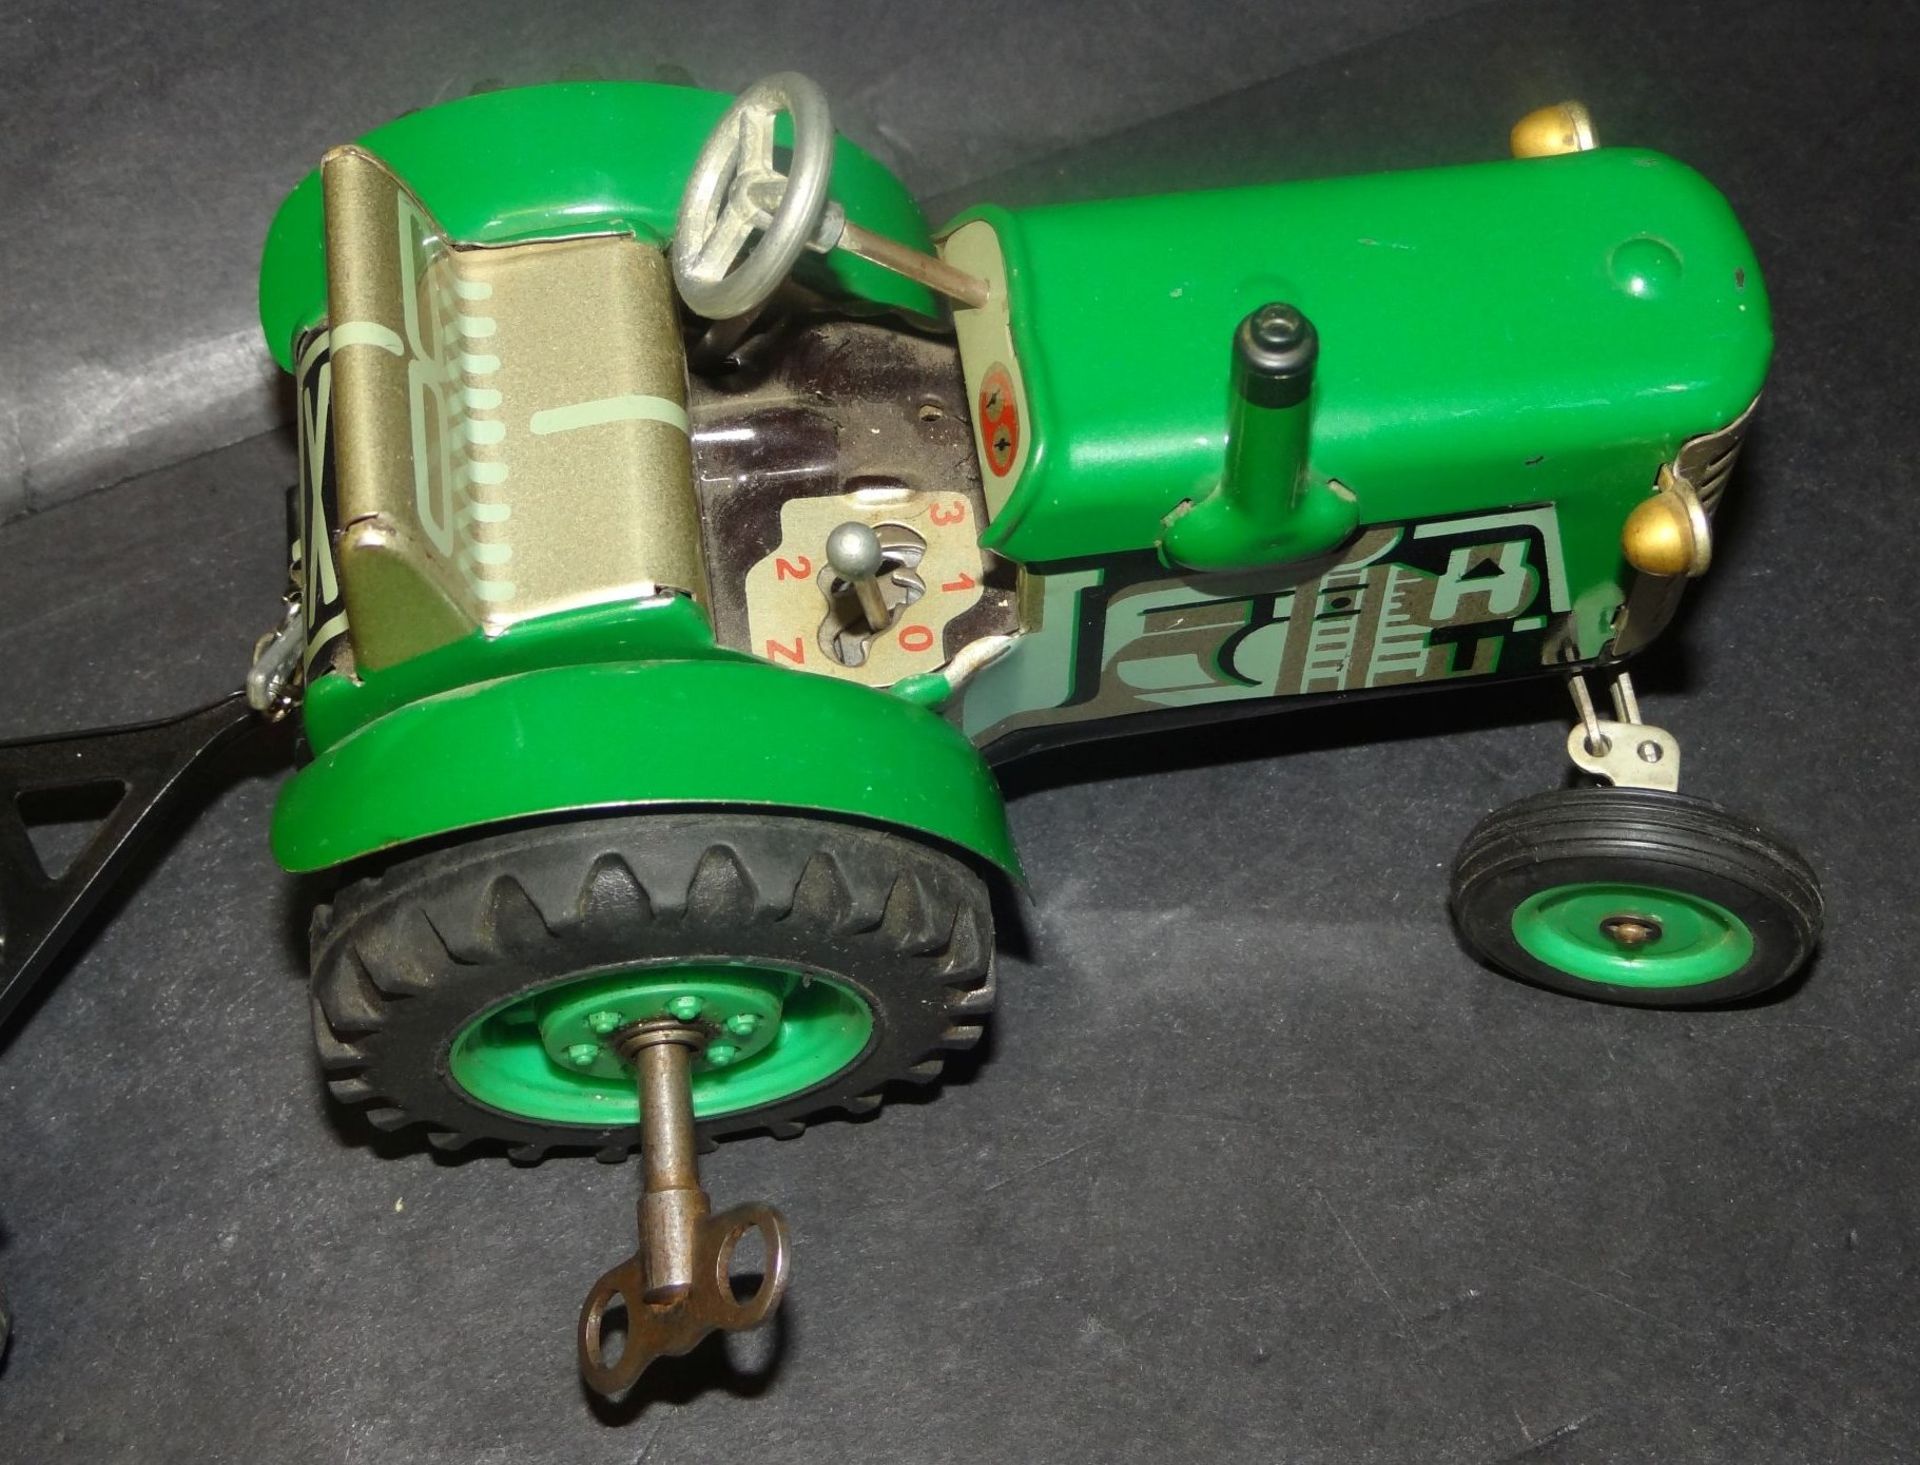 Blechtraktor "Zetor" mit Anhänger, 2 Anwendungen, L-Traktor 15 cm, guter Zustand, Schlüsselwerk lä - Bild 3 aus 6